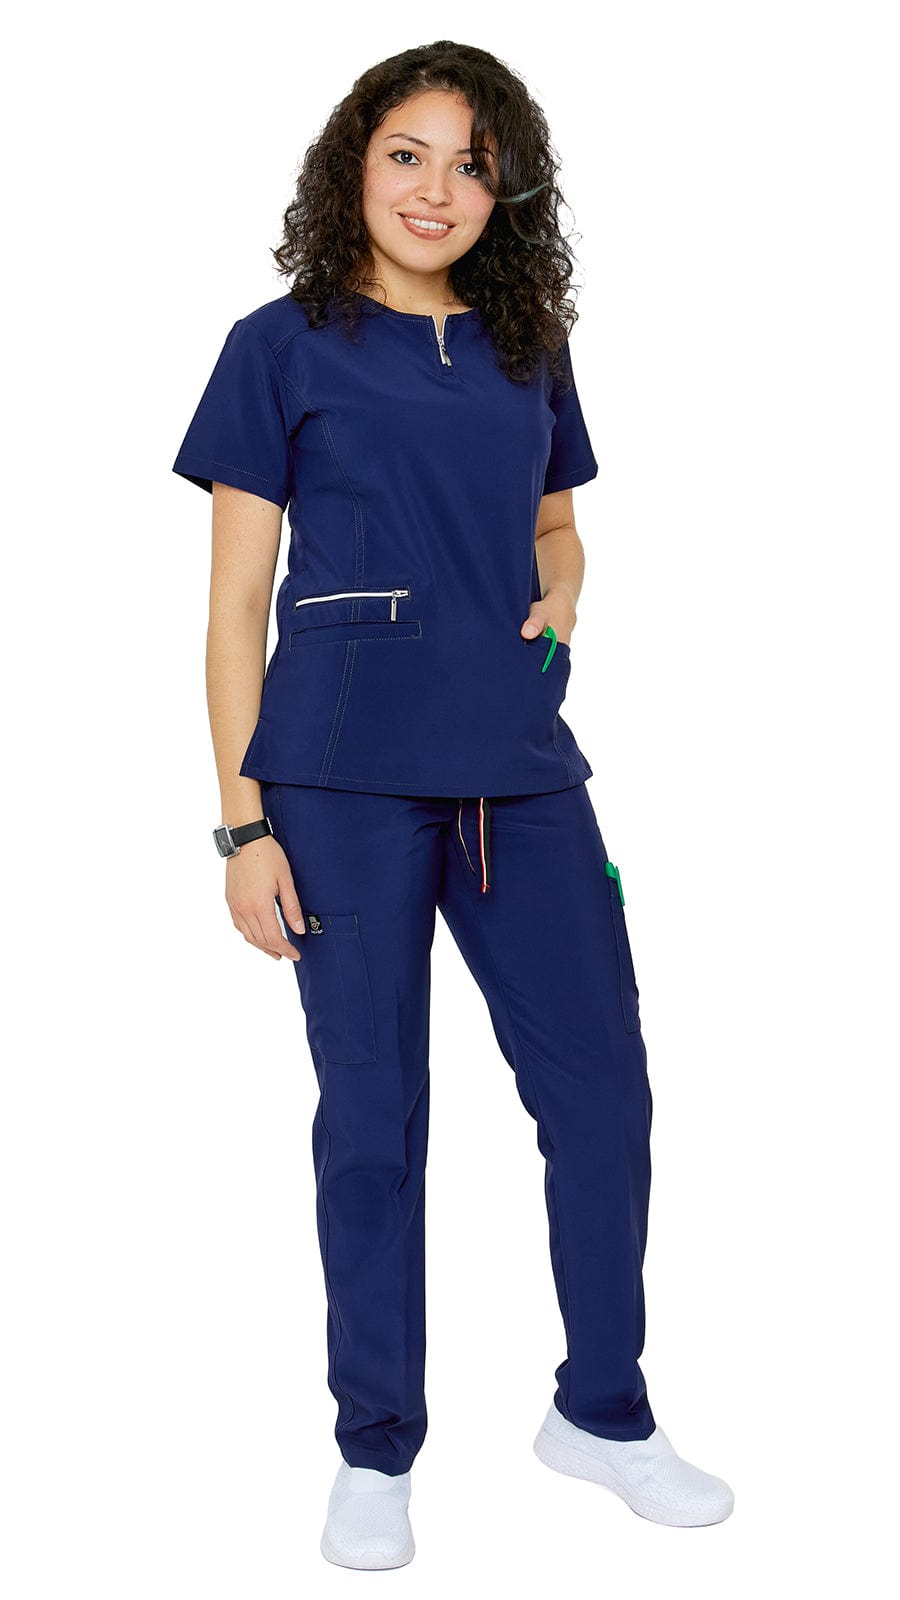 Dress A Med Women's Soft Stretch Silver Zipper Uniform Scrubs